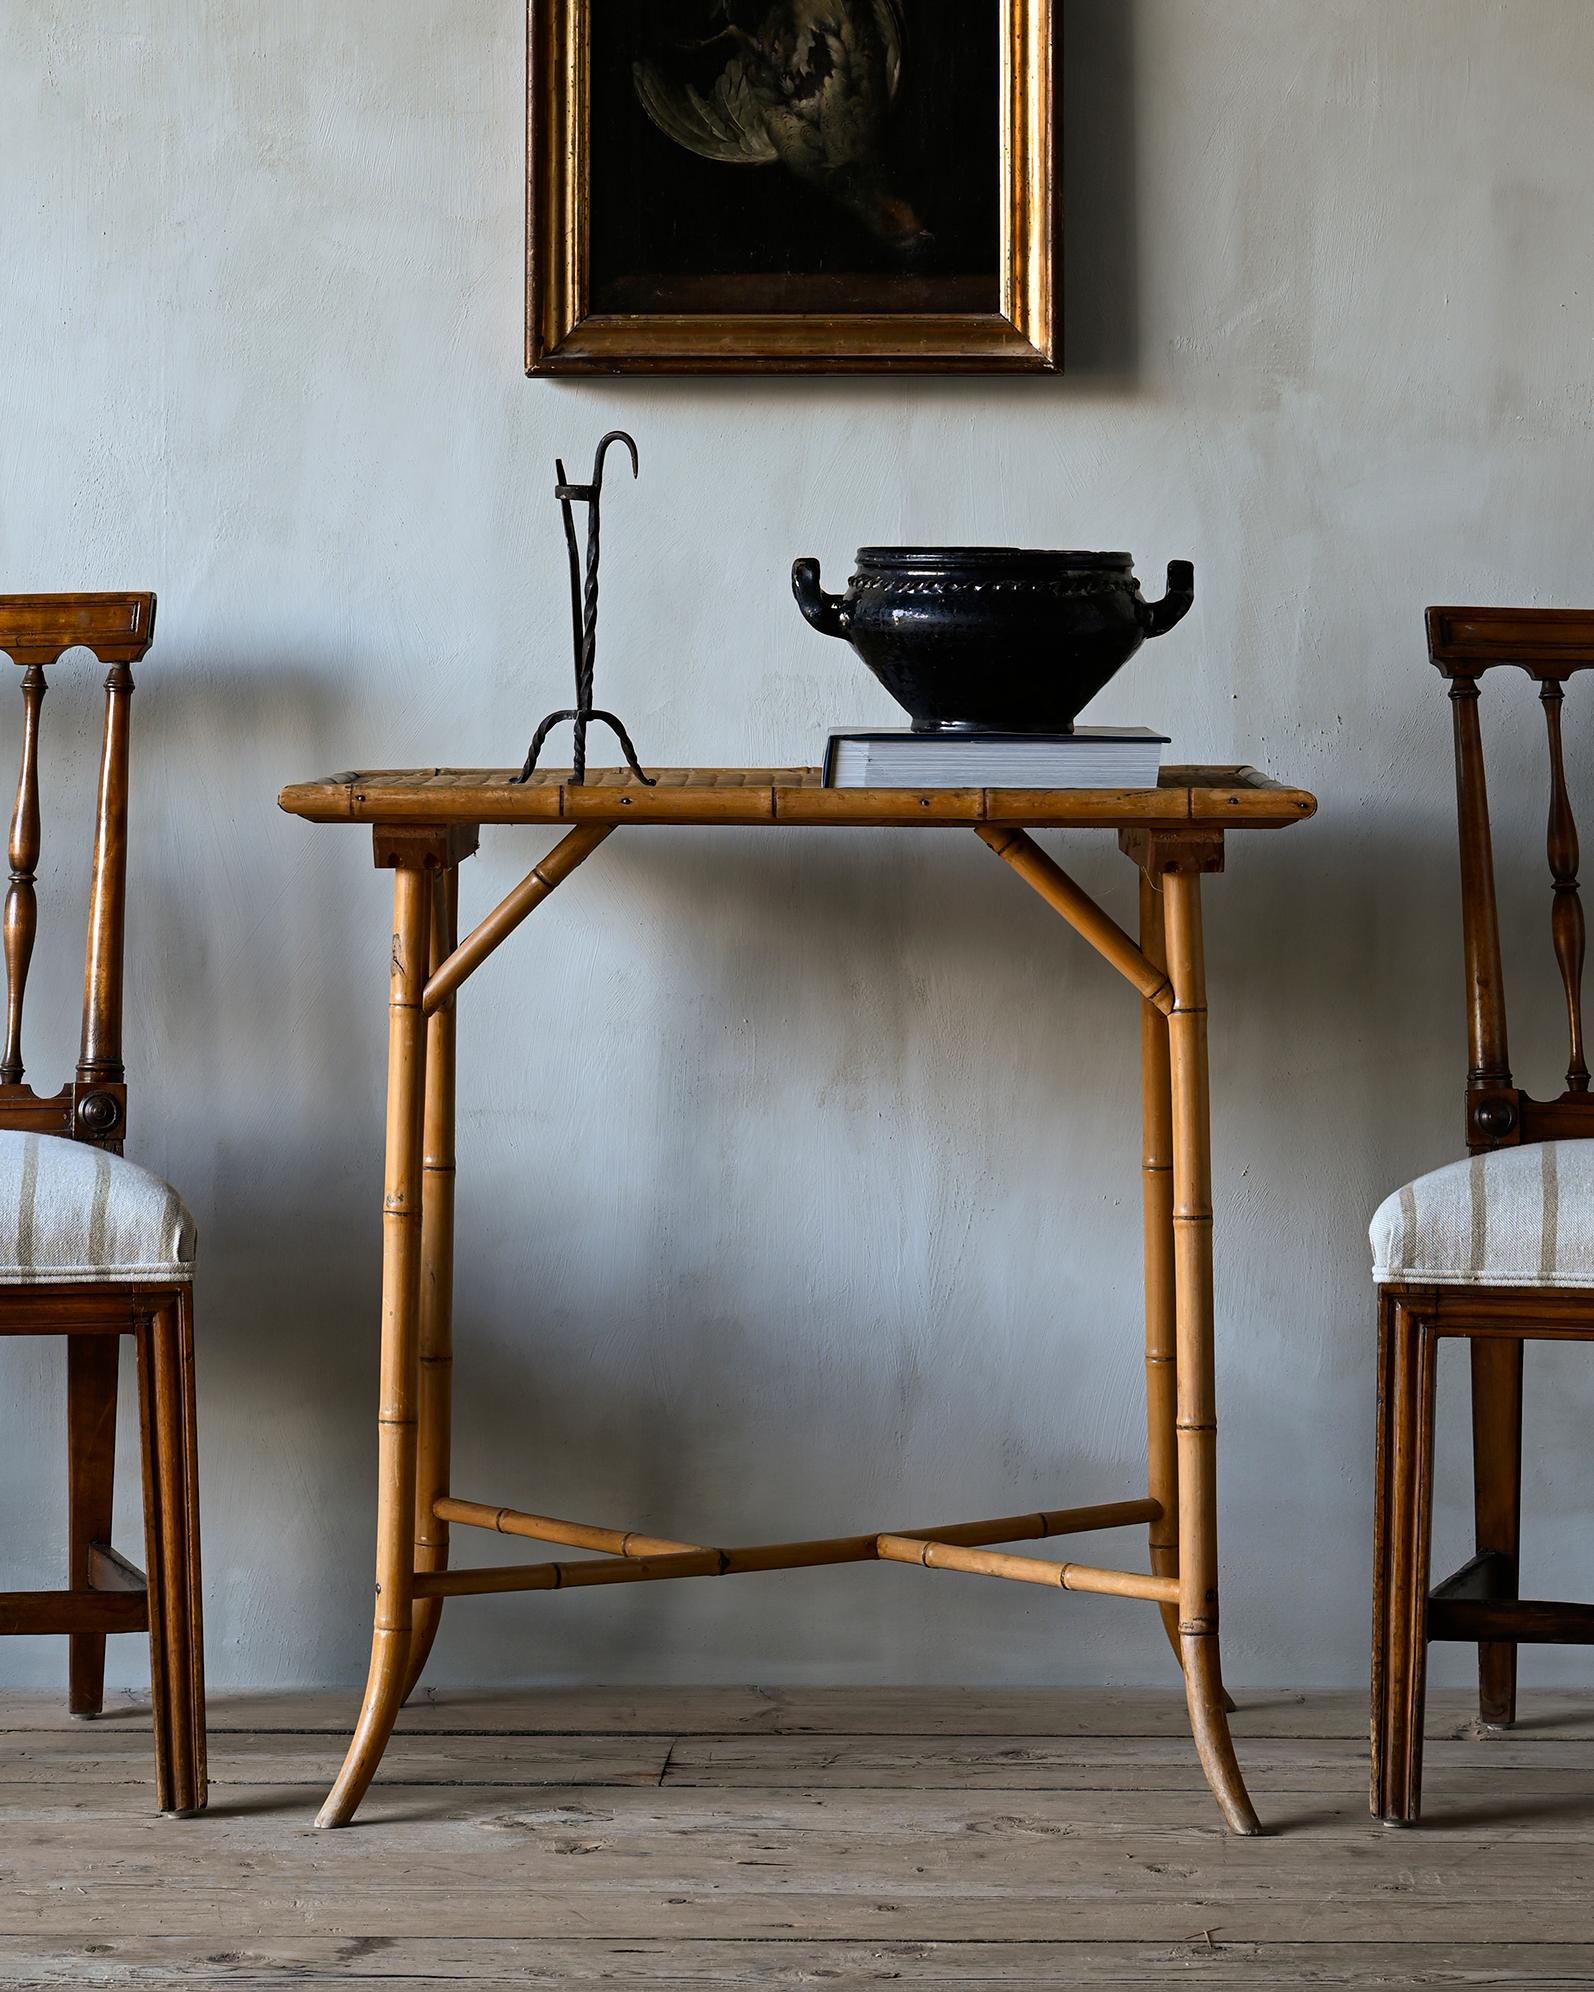 Inhabituelle table suédoise en faux bambou du 19ème siècle, en bon état, avec un plateau en roseau fin tressé. Ca 1890 - 1900, Suède.